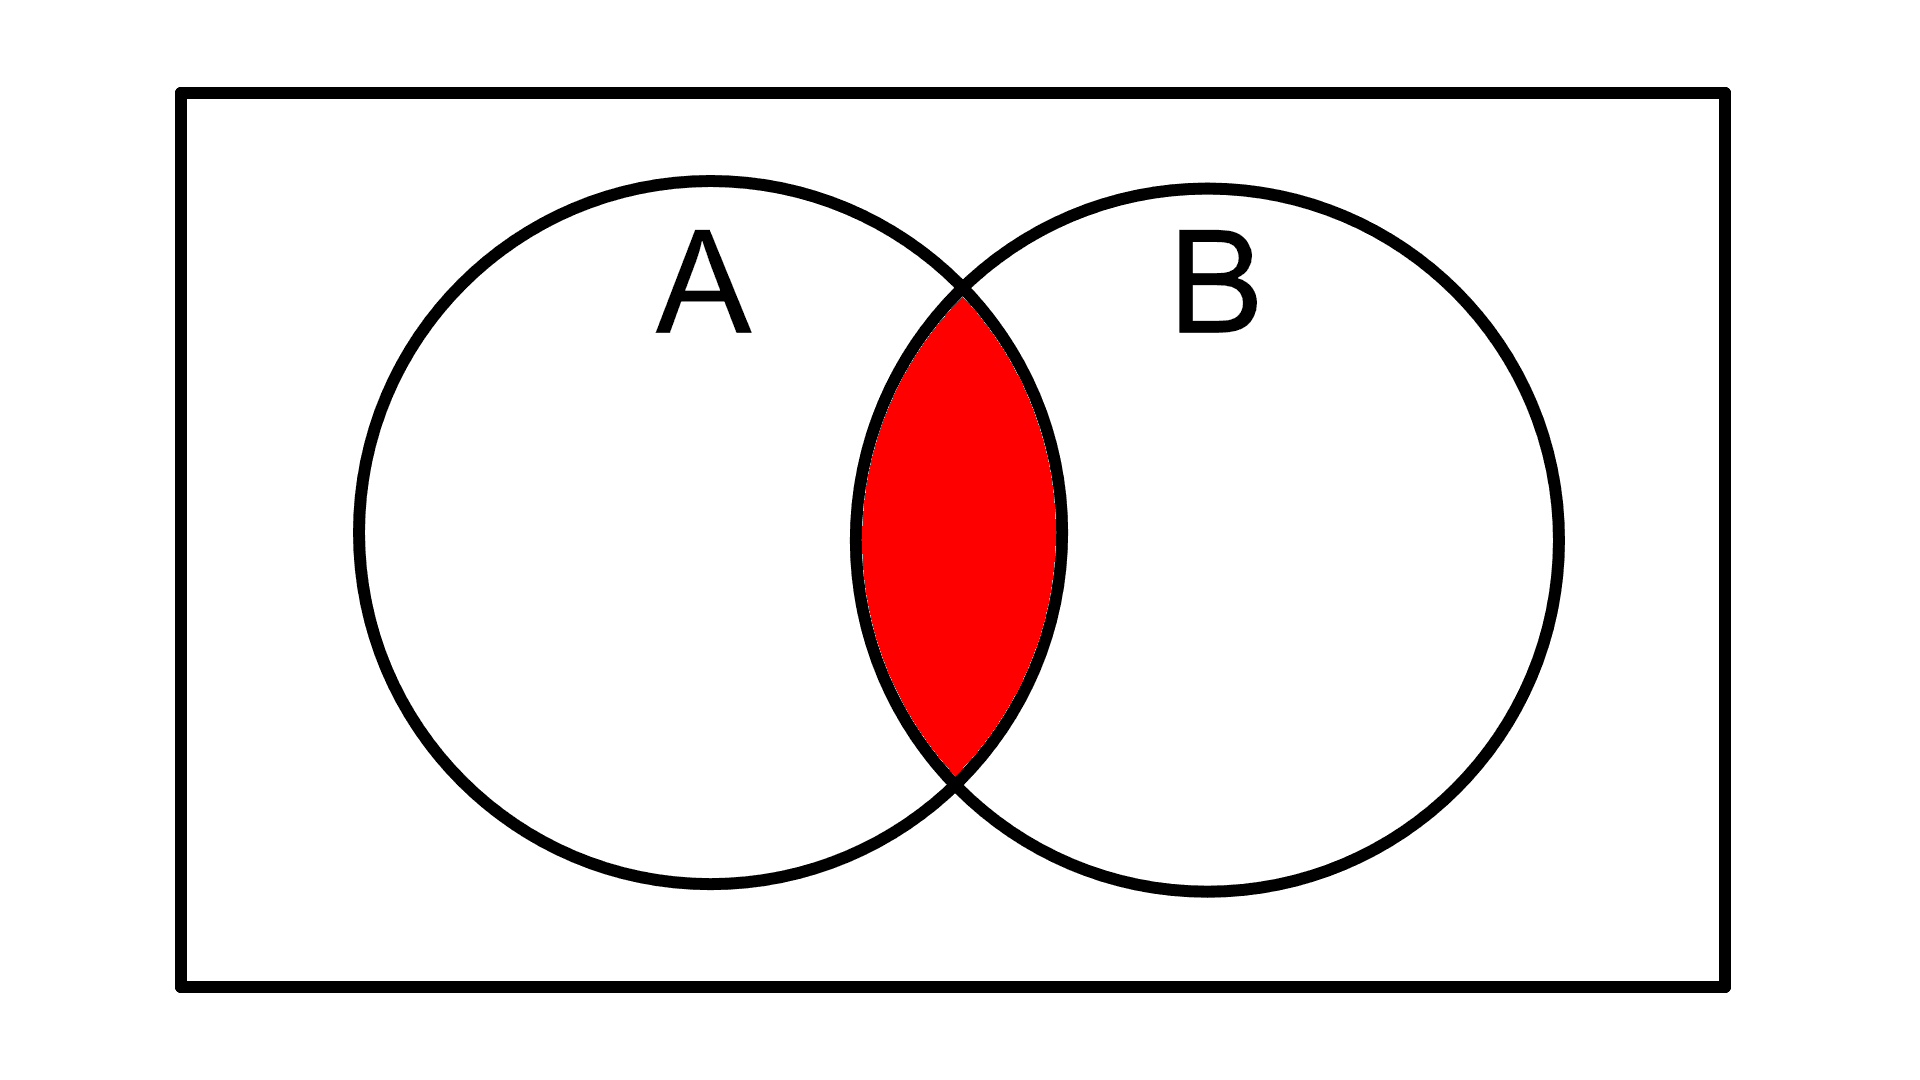 2 elipsy w prostokącie z zamalowaną częścią wspólną.